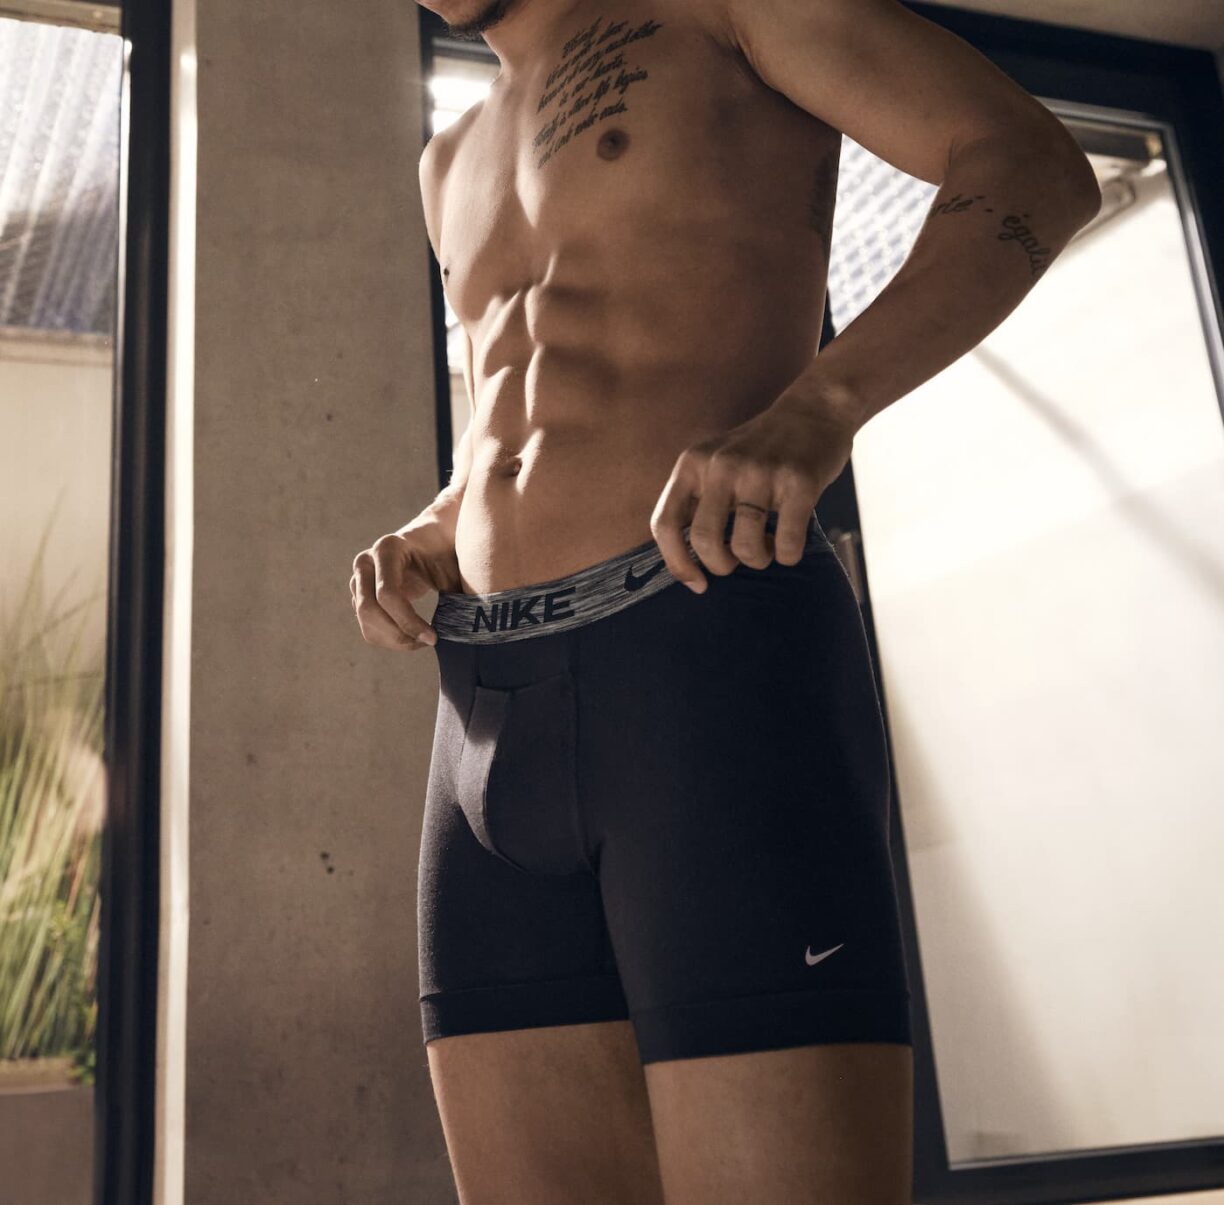 5. Nike underwear fa21 leroy sané nike dri fit reluxe